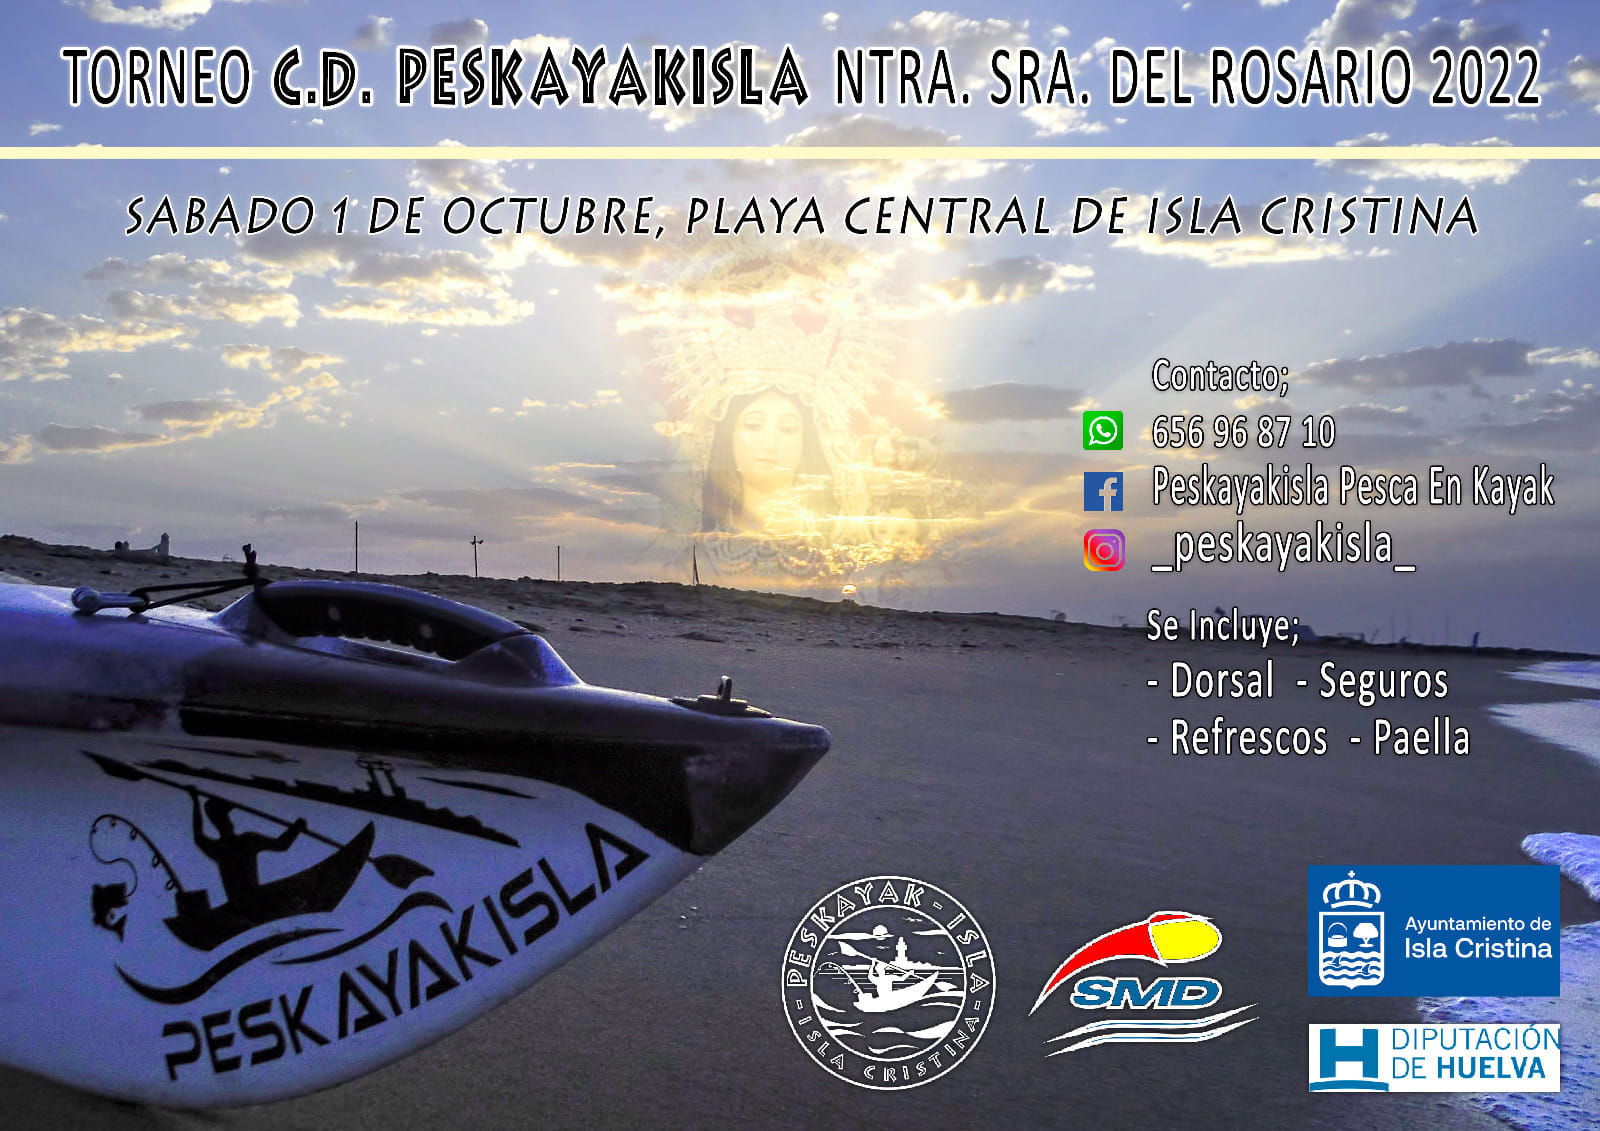 Isla Cristina acoge el “Torneo de Pesca Kayak Ntra. Sra. del Rosario.